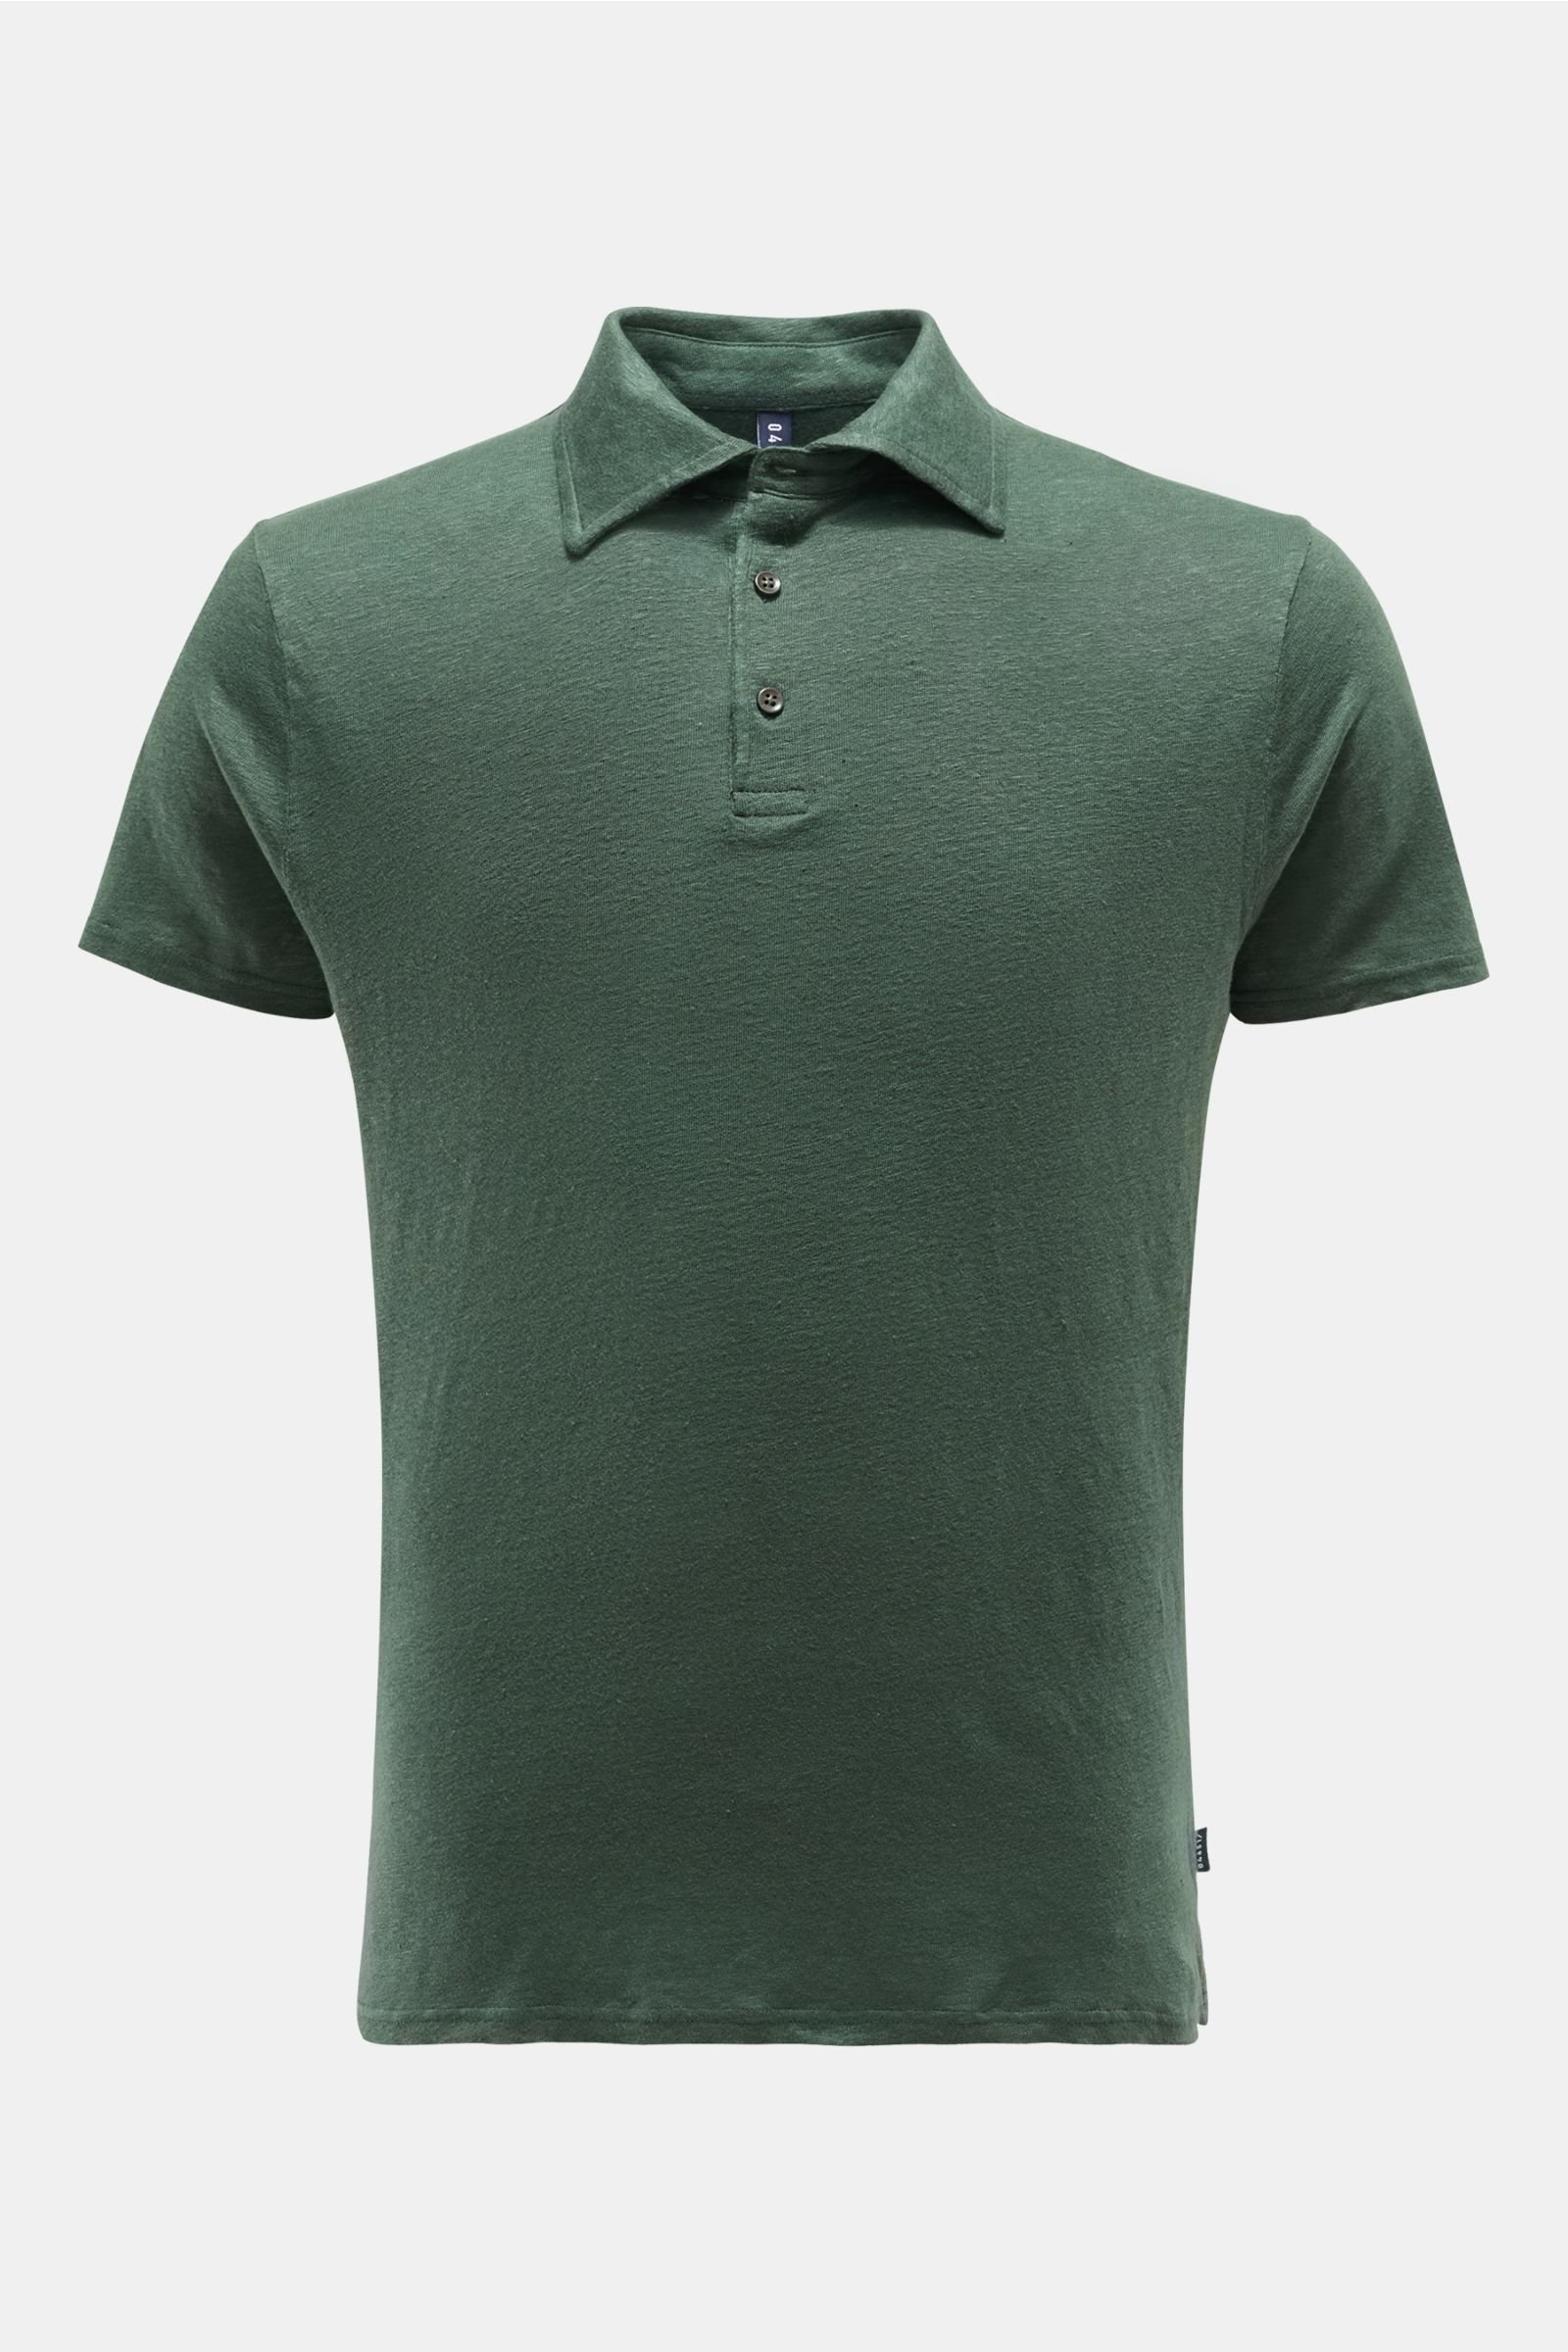 Leinen-Poloshirt dunkelgrün